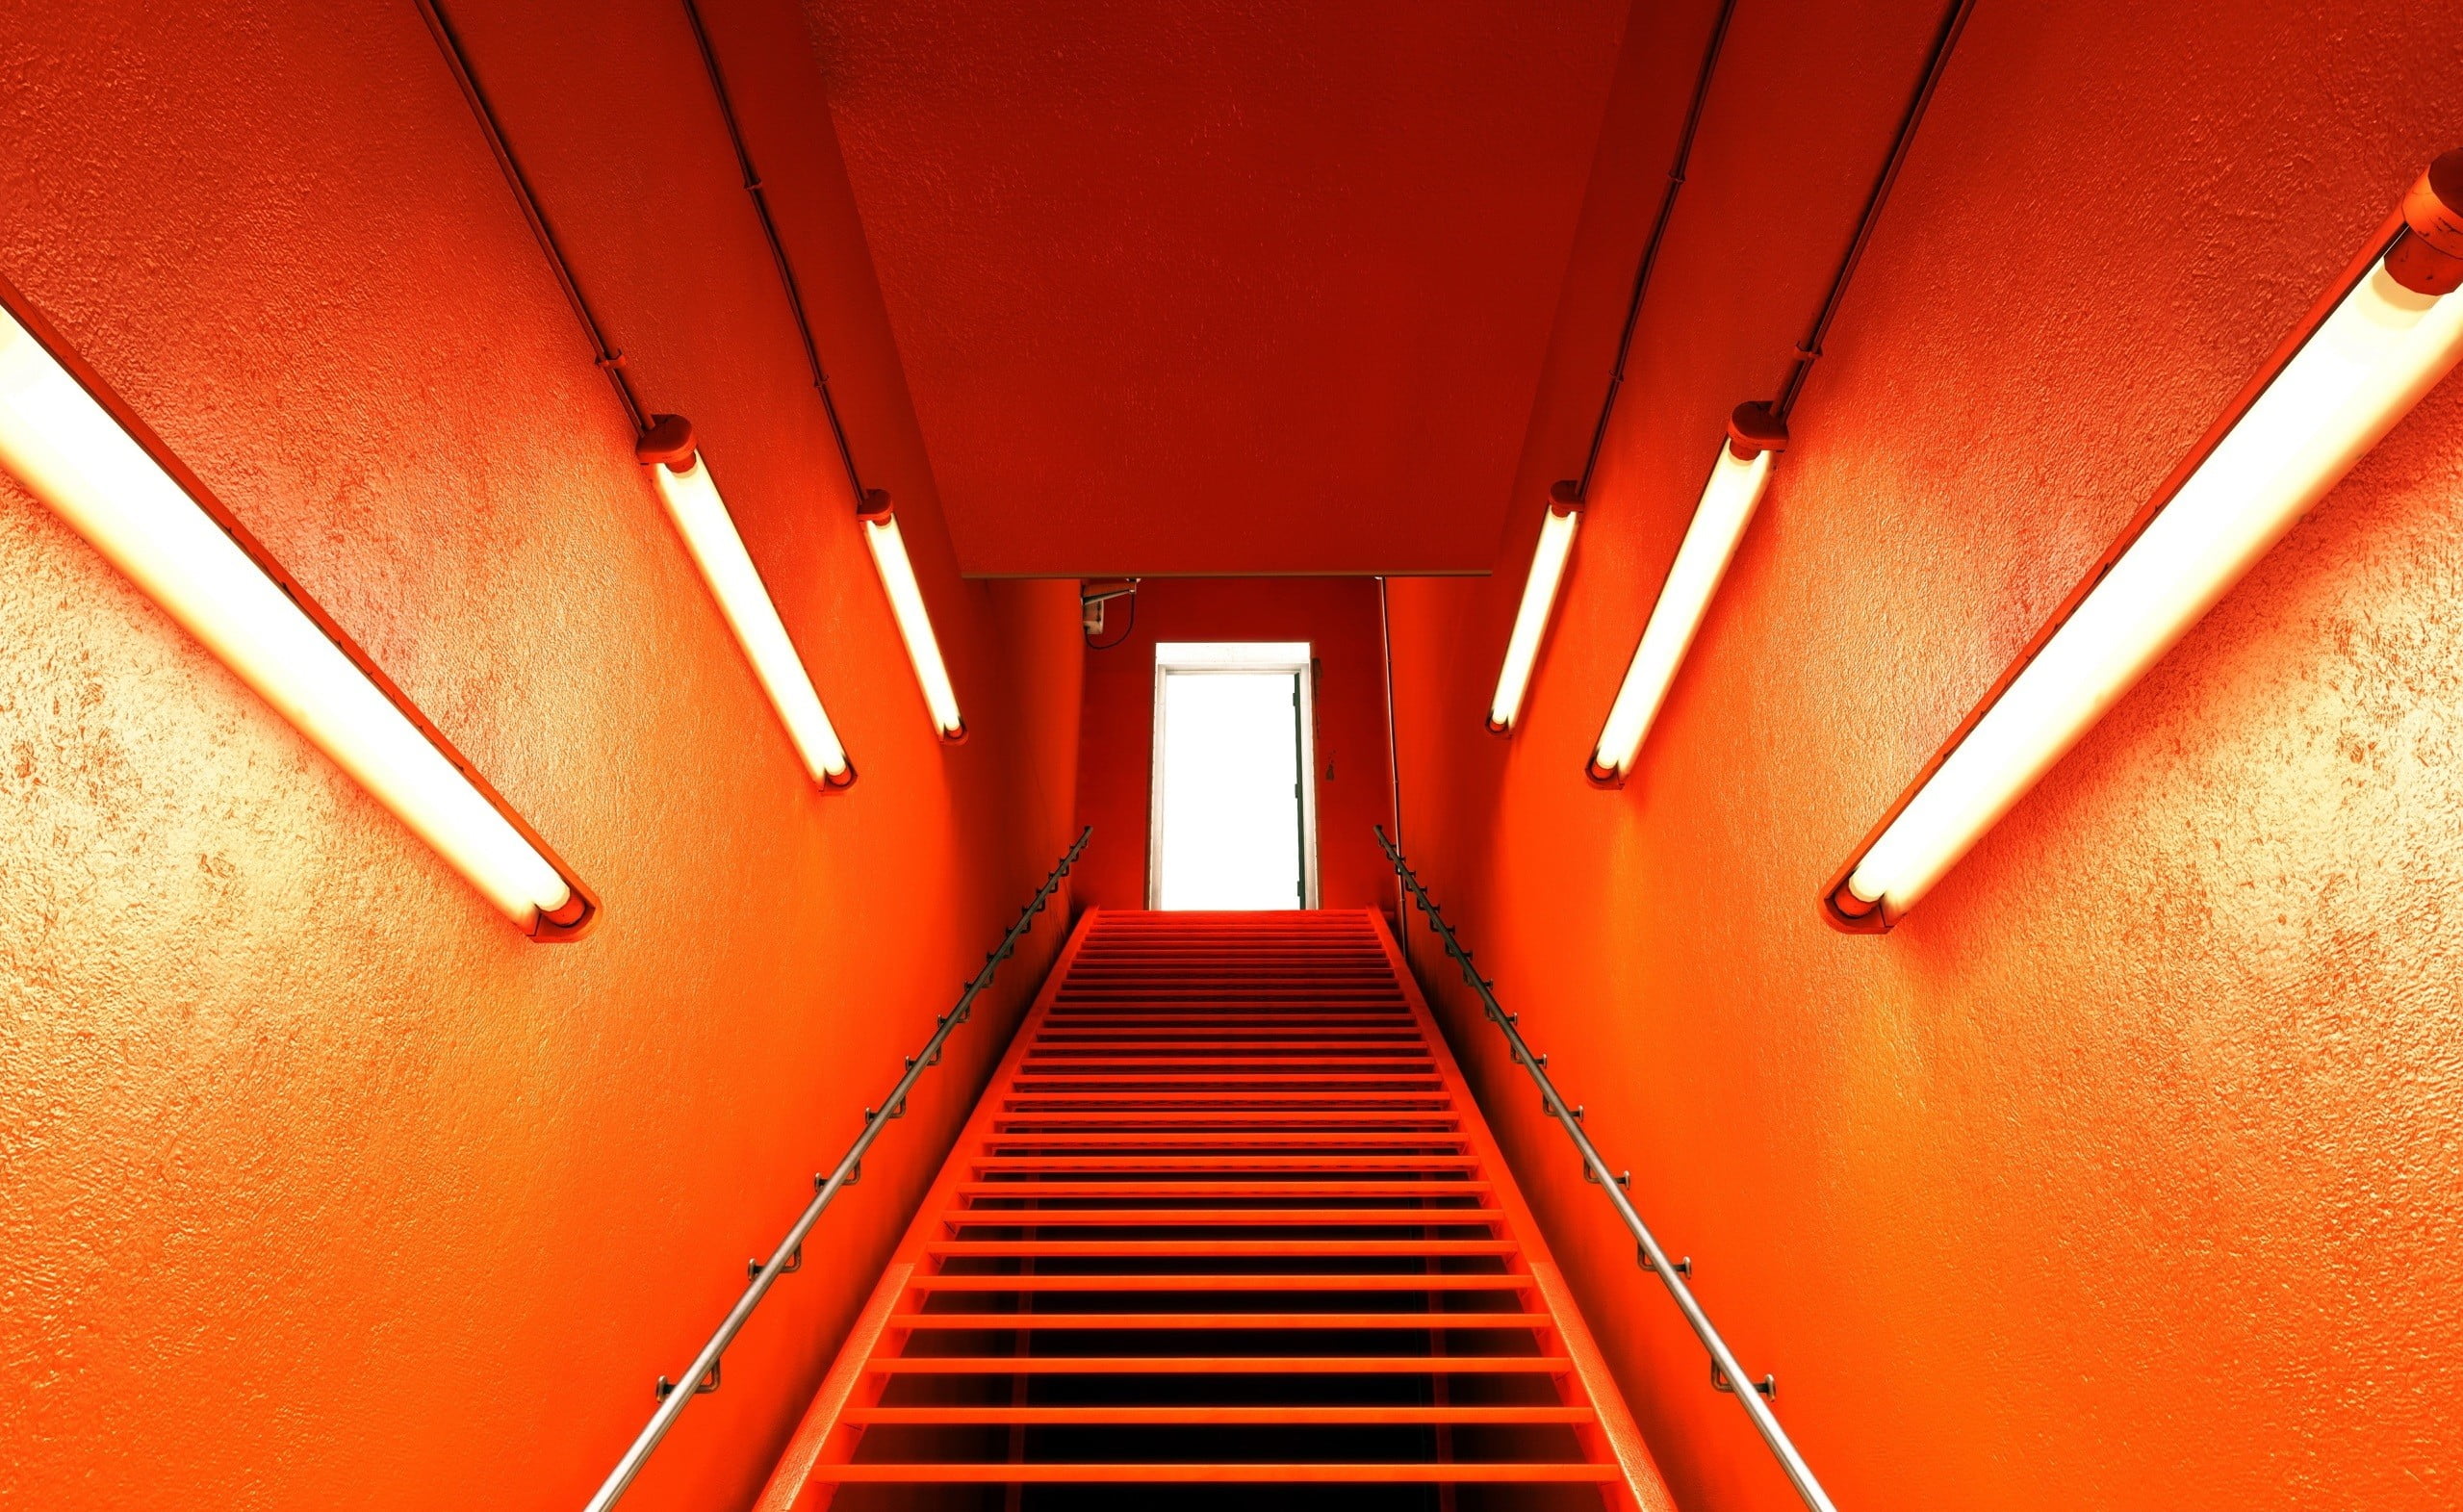 Комната была освещена ровным желтым светом. Подсветка лестницы. Оранжевый неон. Красное освещение в комнате. Неоновая подсветка оранжевая.